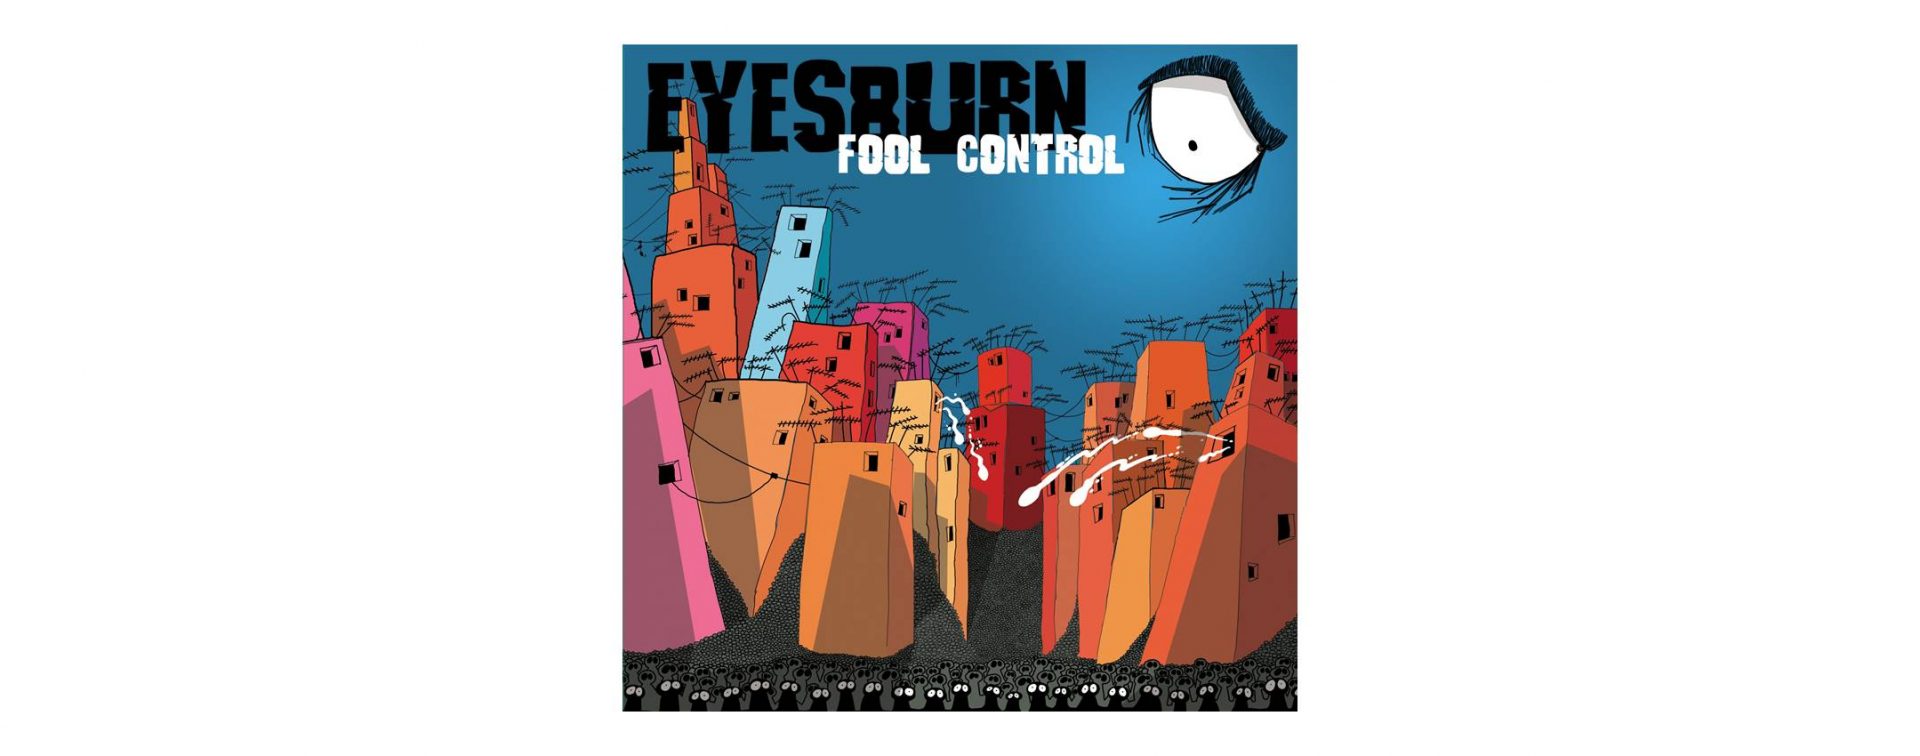 Muzička recenzija: Eyesburn „Fool Control“ (Menart Srbija, 2021. VINIL reizdanje)